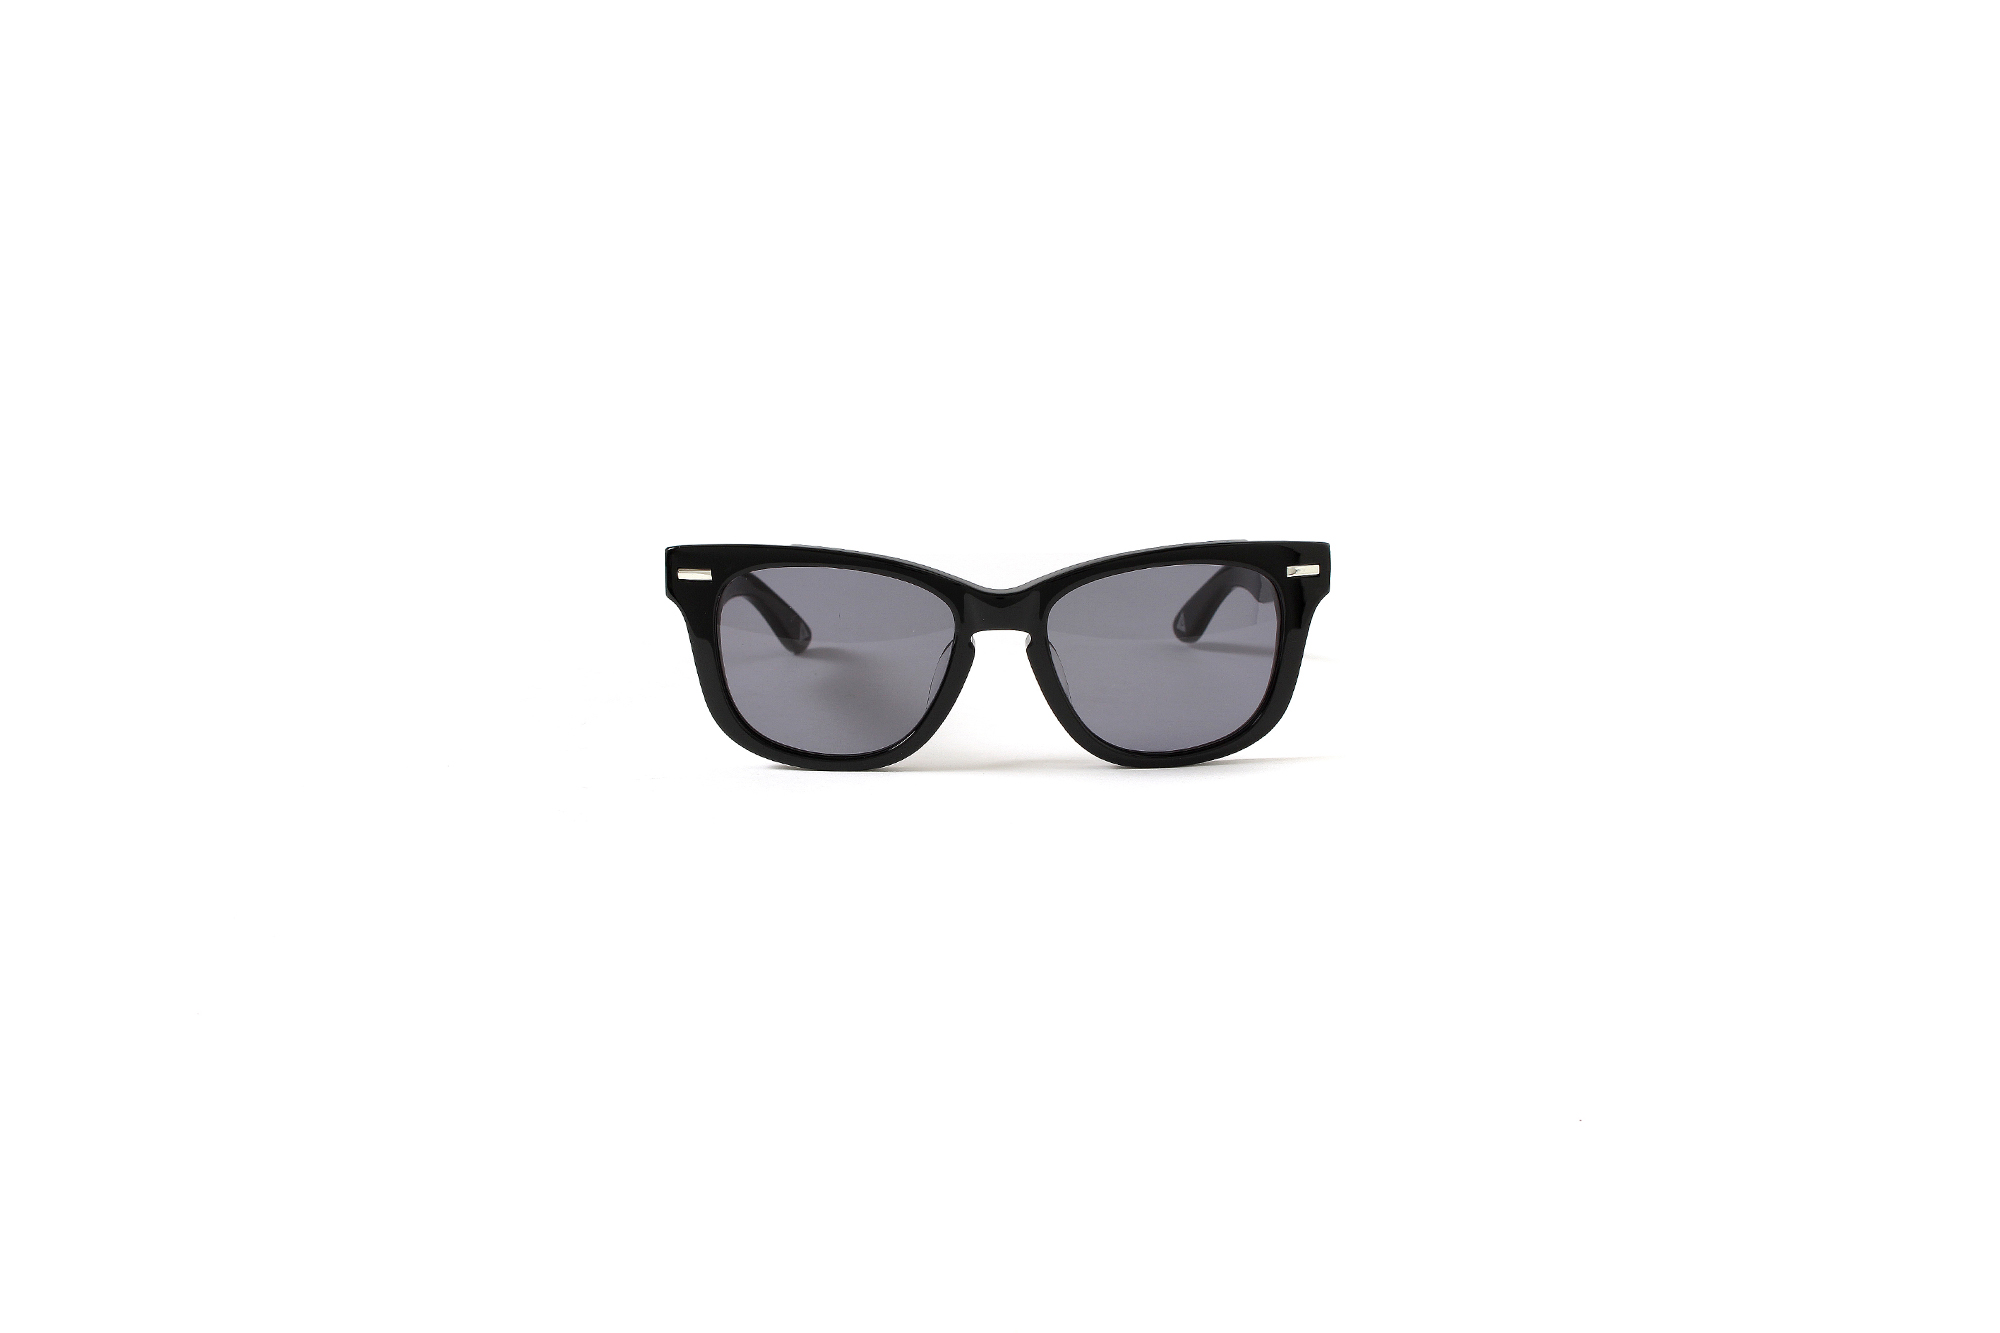 FIXER(フィクサー) BLACK PANTHER(ブラックパンサー) 925 STERLING SILVER サングラス BLACK × BLACK SMOKE (ブラック×ブラックスモーク)【ご予約受付中】愛知 名古屋 Alto e Diritto アルトエデリット 眼鏡 グラサン 925スターリングシルバー スペシャルモデル sunglasses